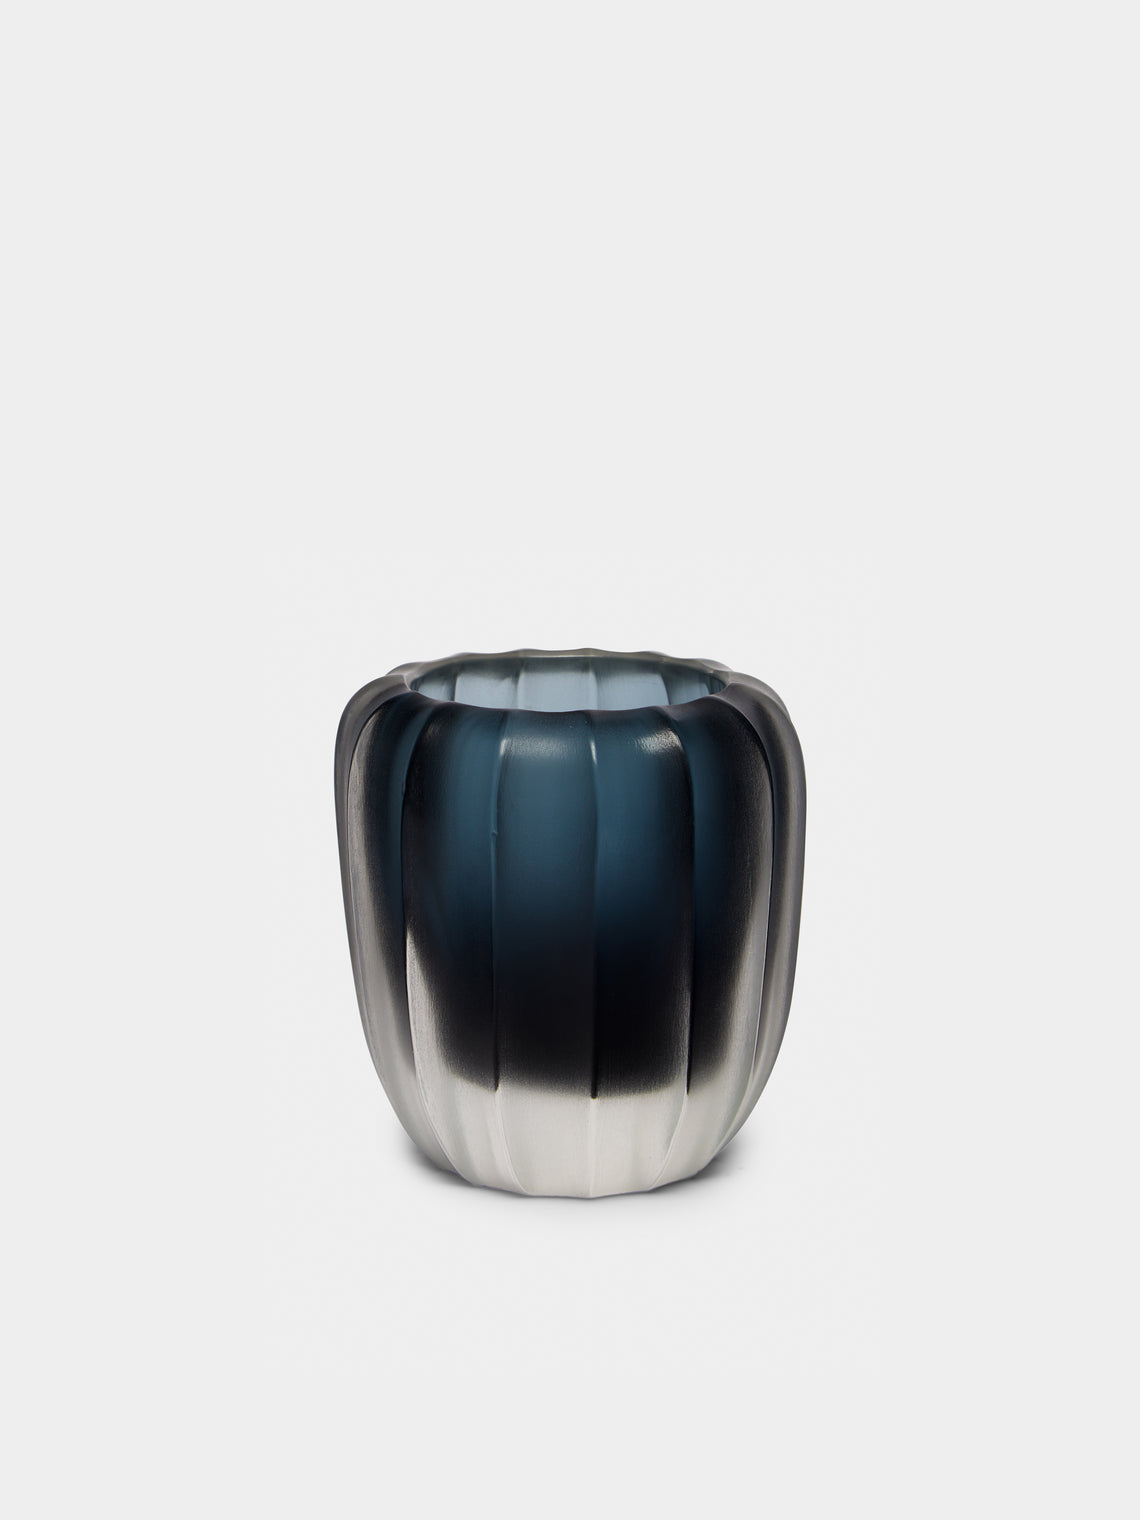 Micheluzzi Glass - Rullo Oceano Hand-Blown Murano Glass Vase - Blue - ABASK - 